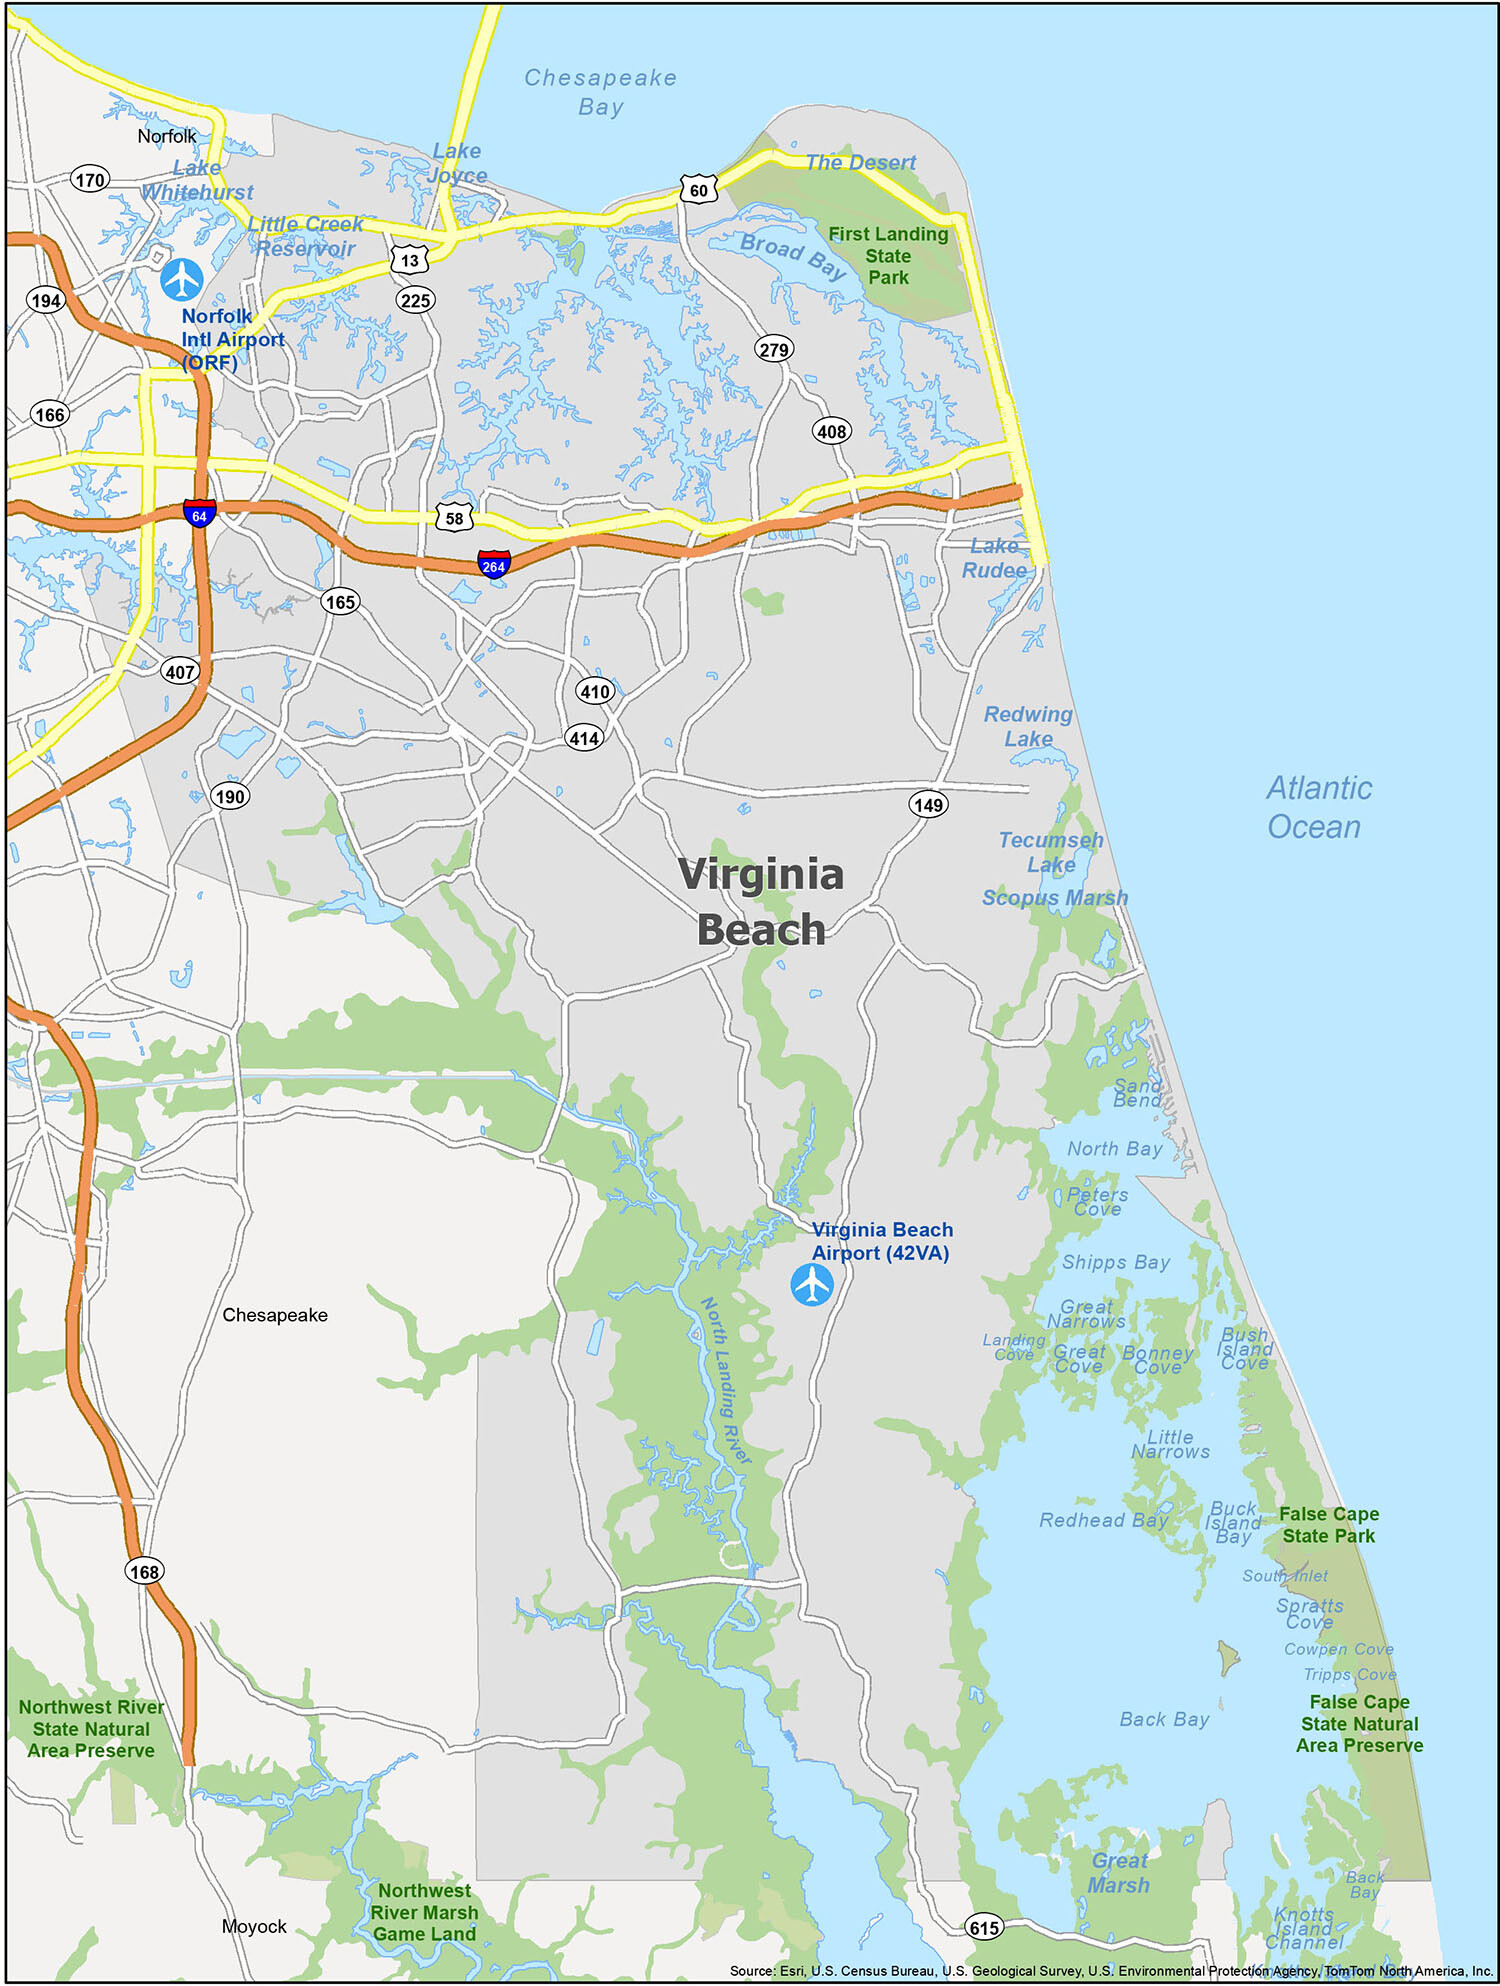 Virginia Beach Map [Virginia] - GIS Geography